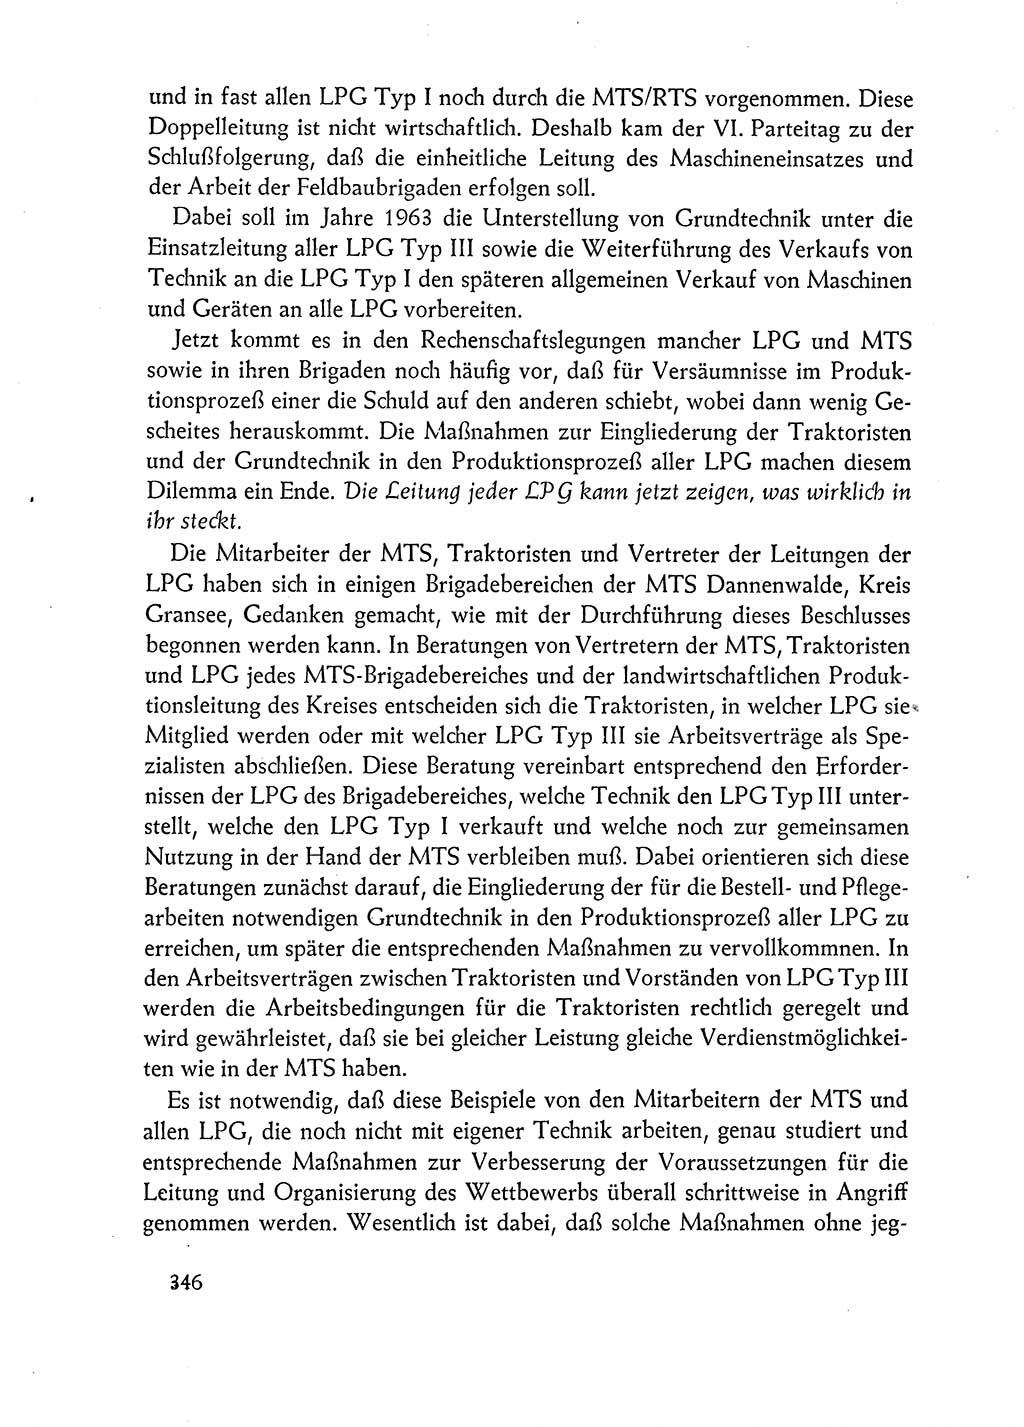 Dokumente der Sozialistischen Einheitspartei Deutschlands (SED) [Deutsche Demokratische Republik (DDR)] 1962-1963, Seite 346 (Dok. SED DDR 1962-1963, S. 346)